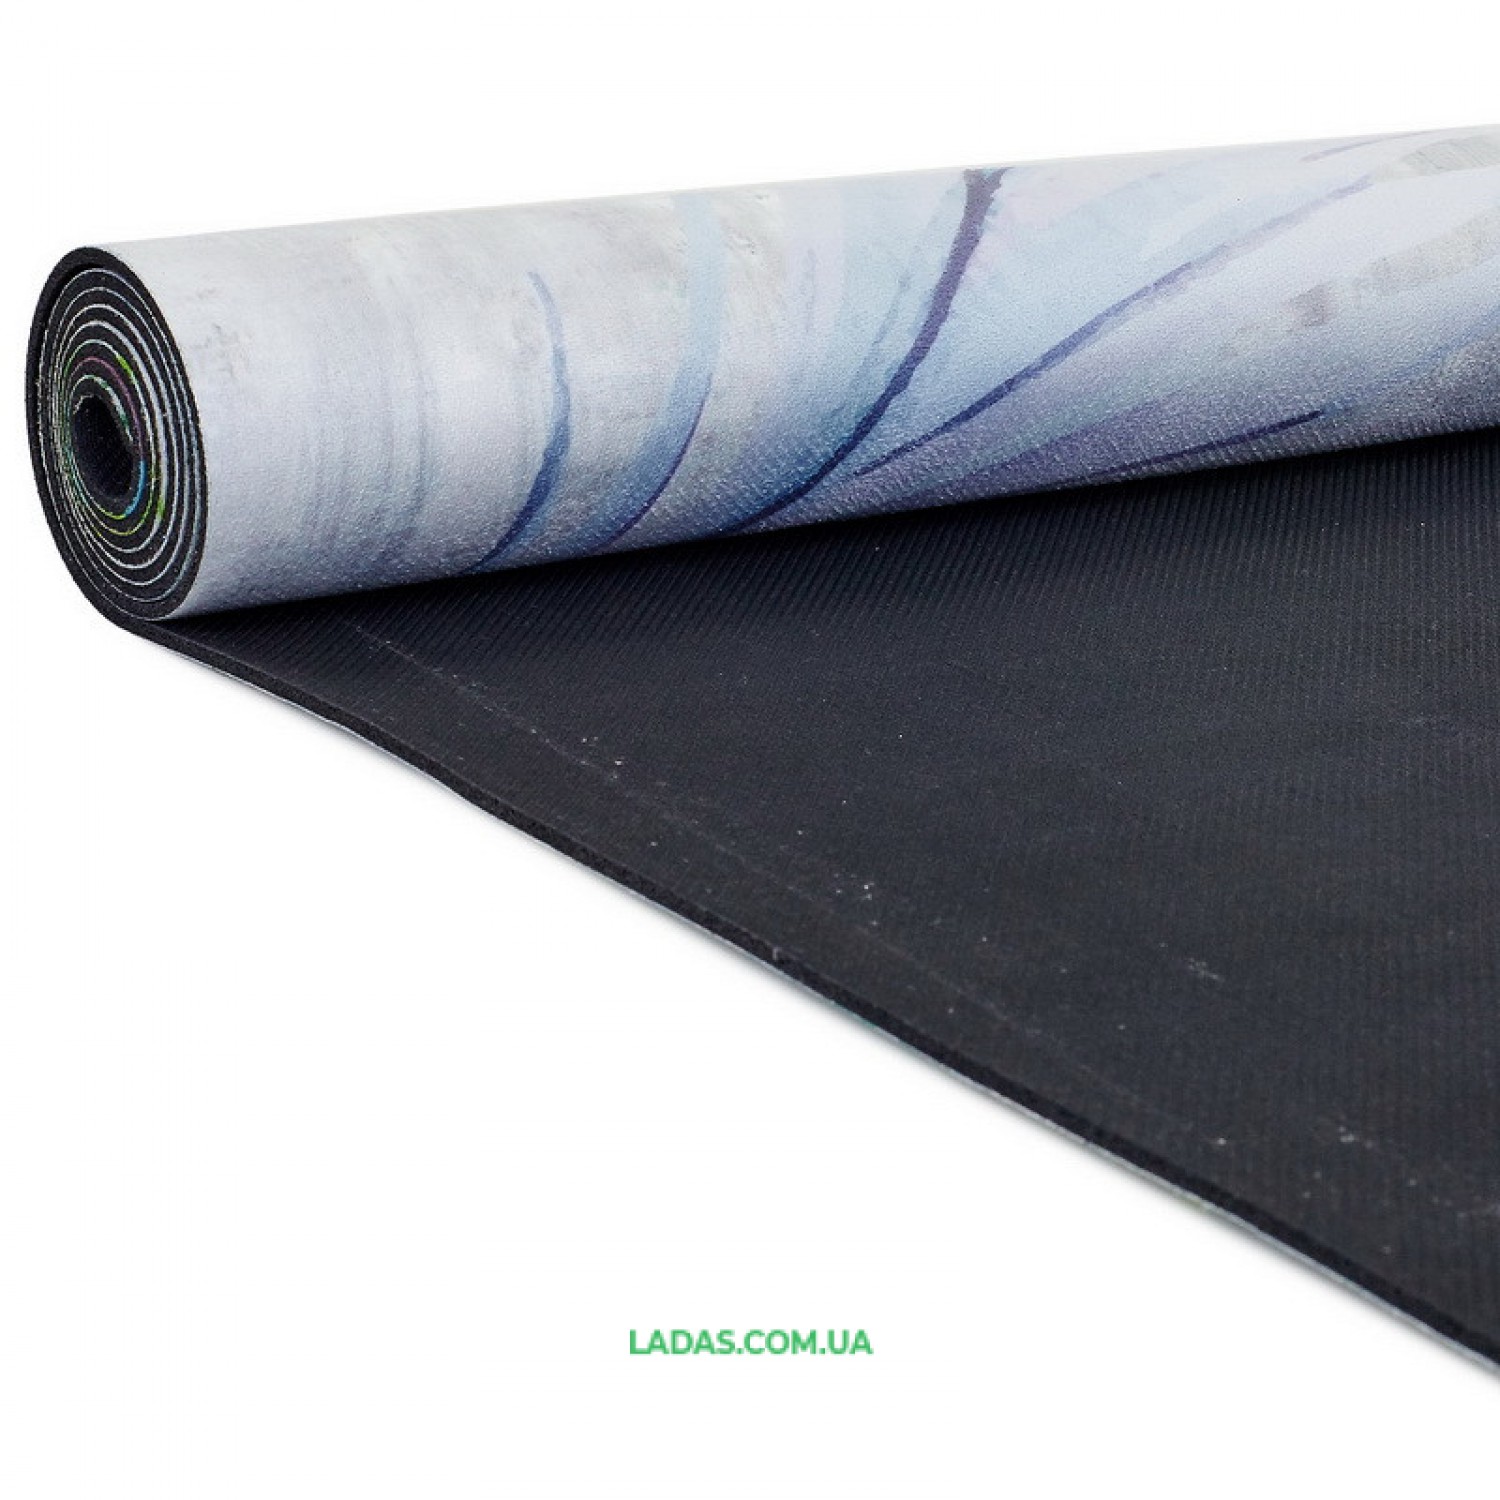 Коврик для йоги Замшевый каучуковый двухслойный Record (размер 1,83мx0,61мx3мм)